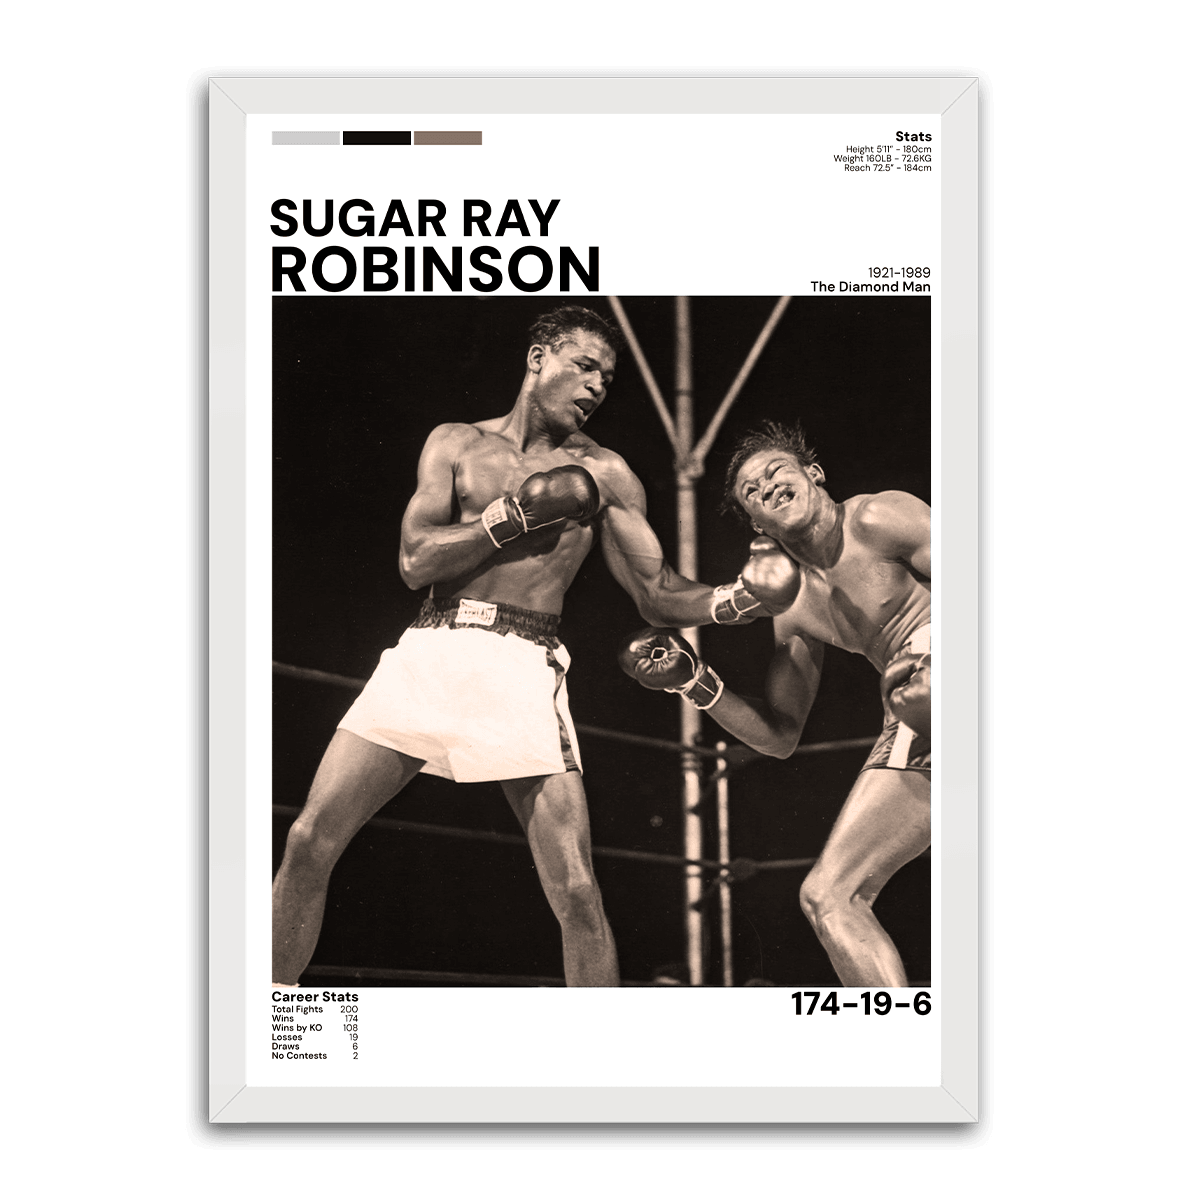 Sugar Ray Robinson - Boxing's Brightest Star - PixMagic